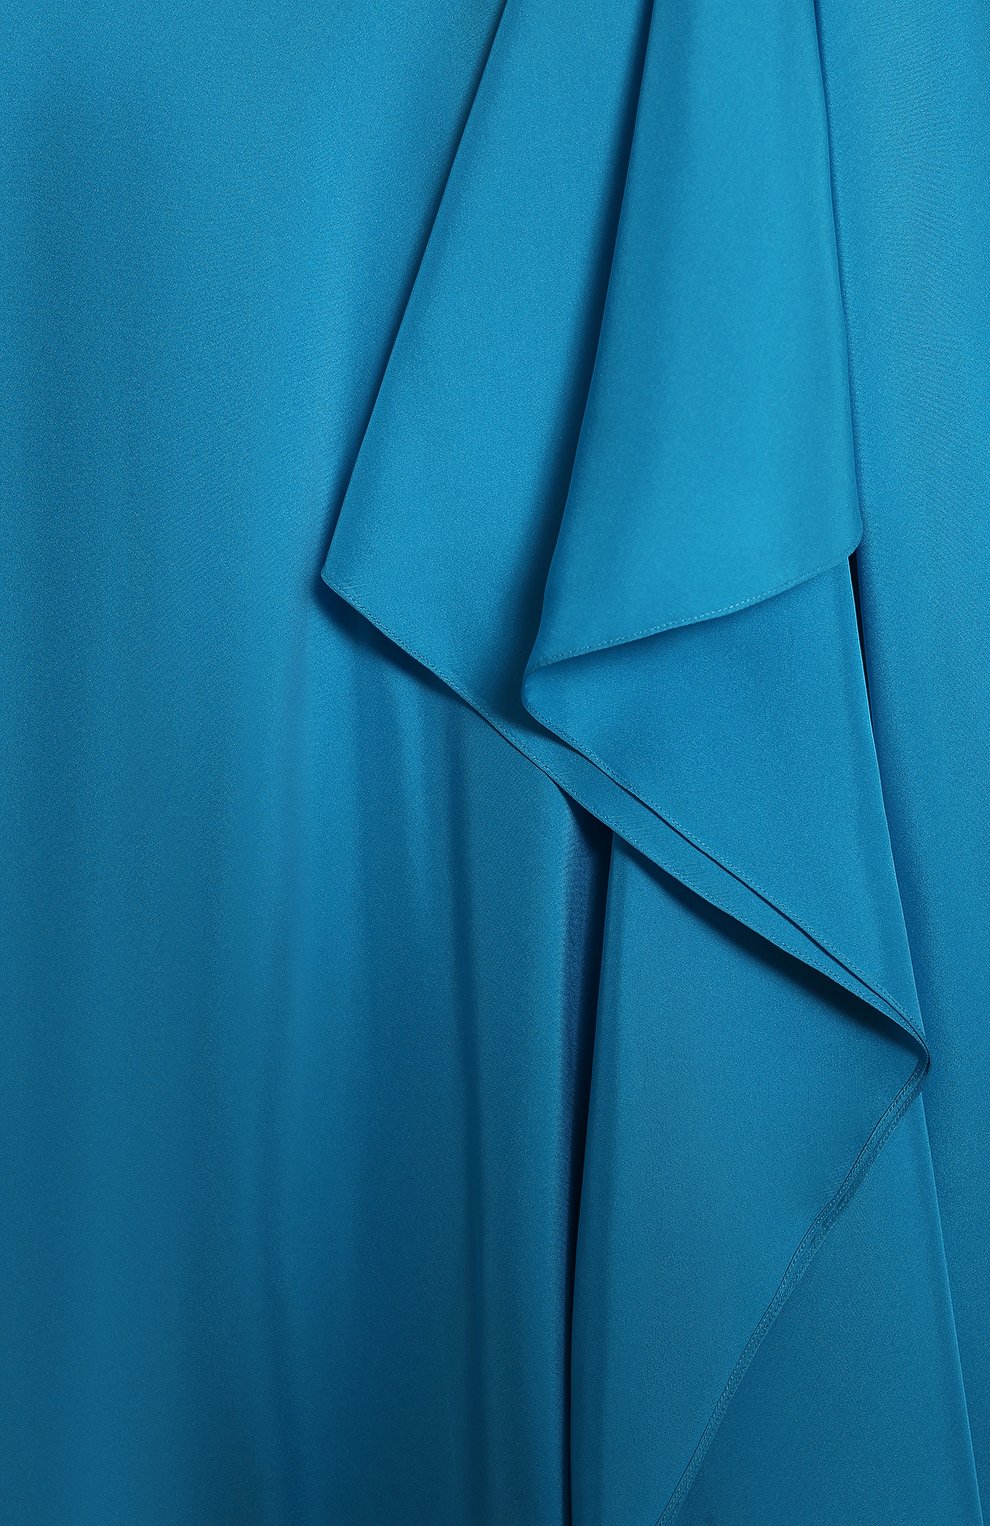 Шелковая юбка | Ralph Lauren | Голубой - 3